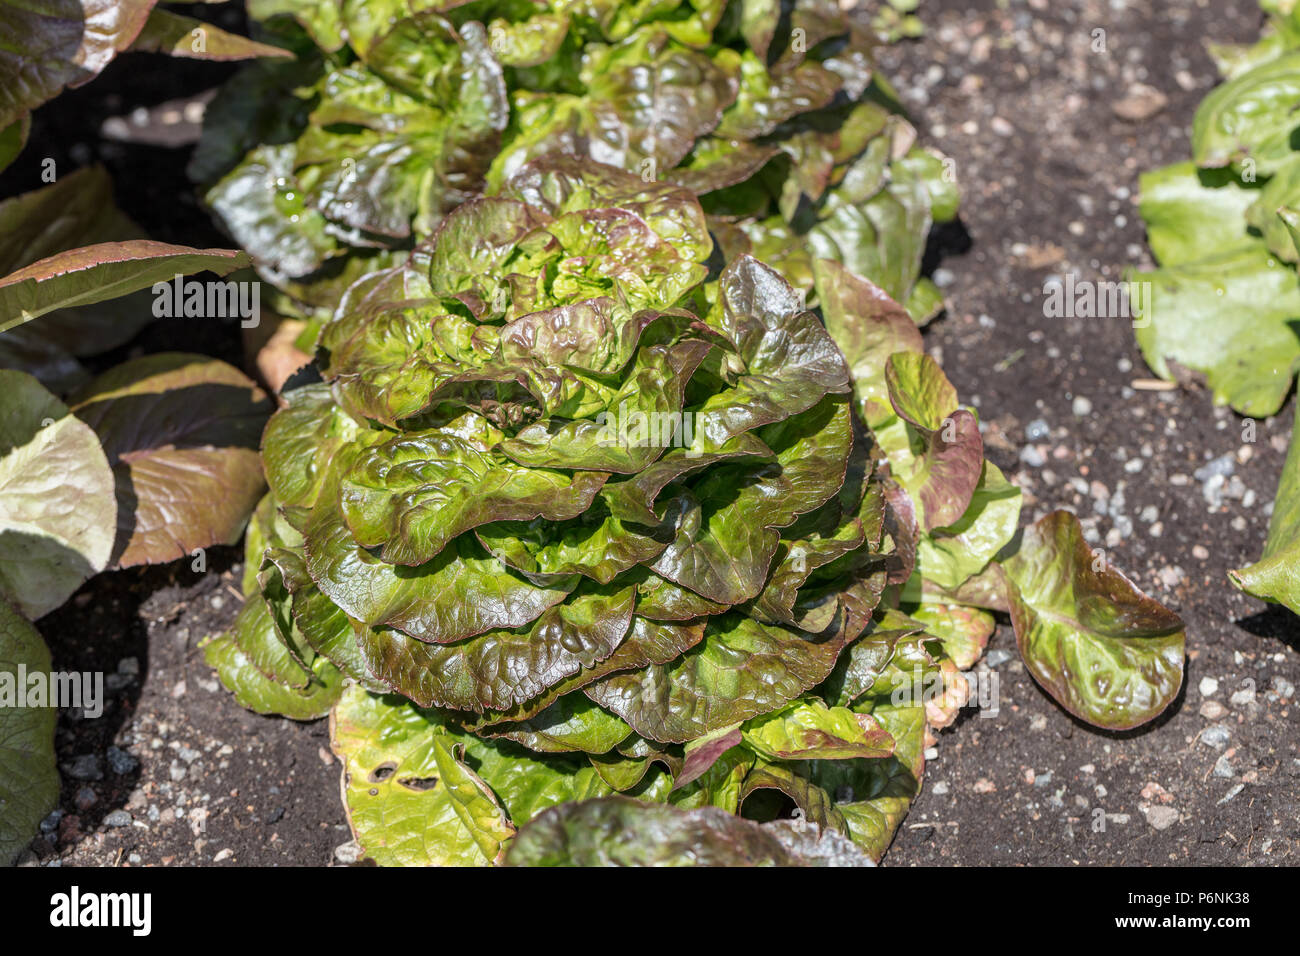 'Cegolaine' Lettuce, Huvudsallat (Lactuca sativa var. capitata crispum) Stock Photo